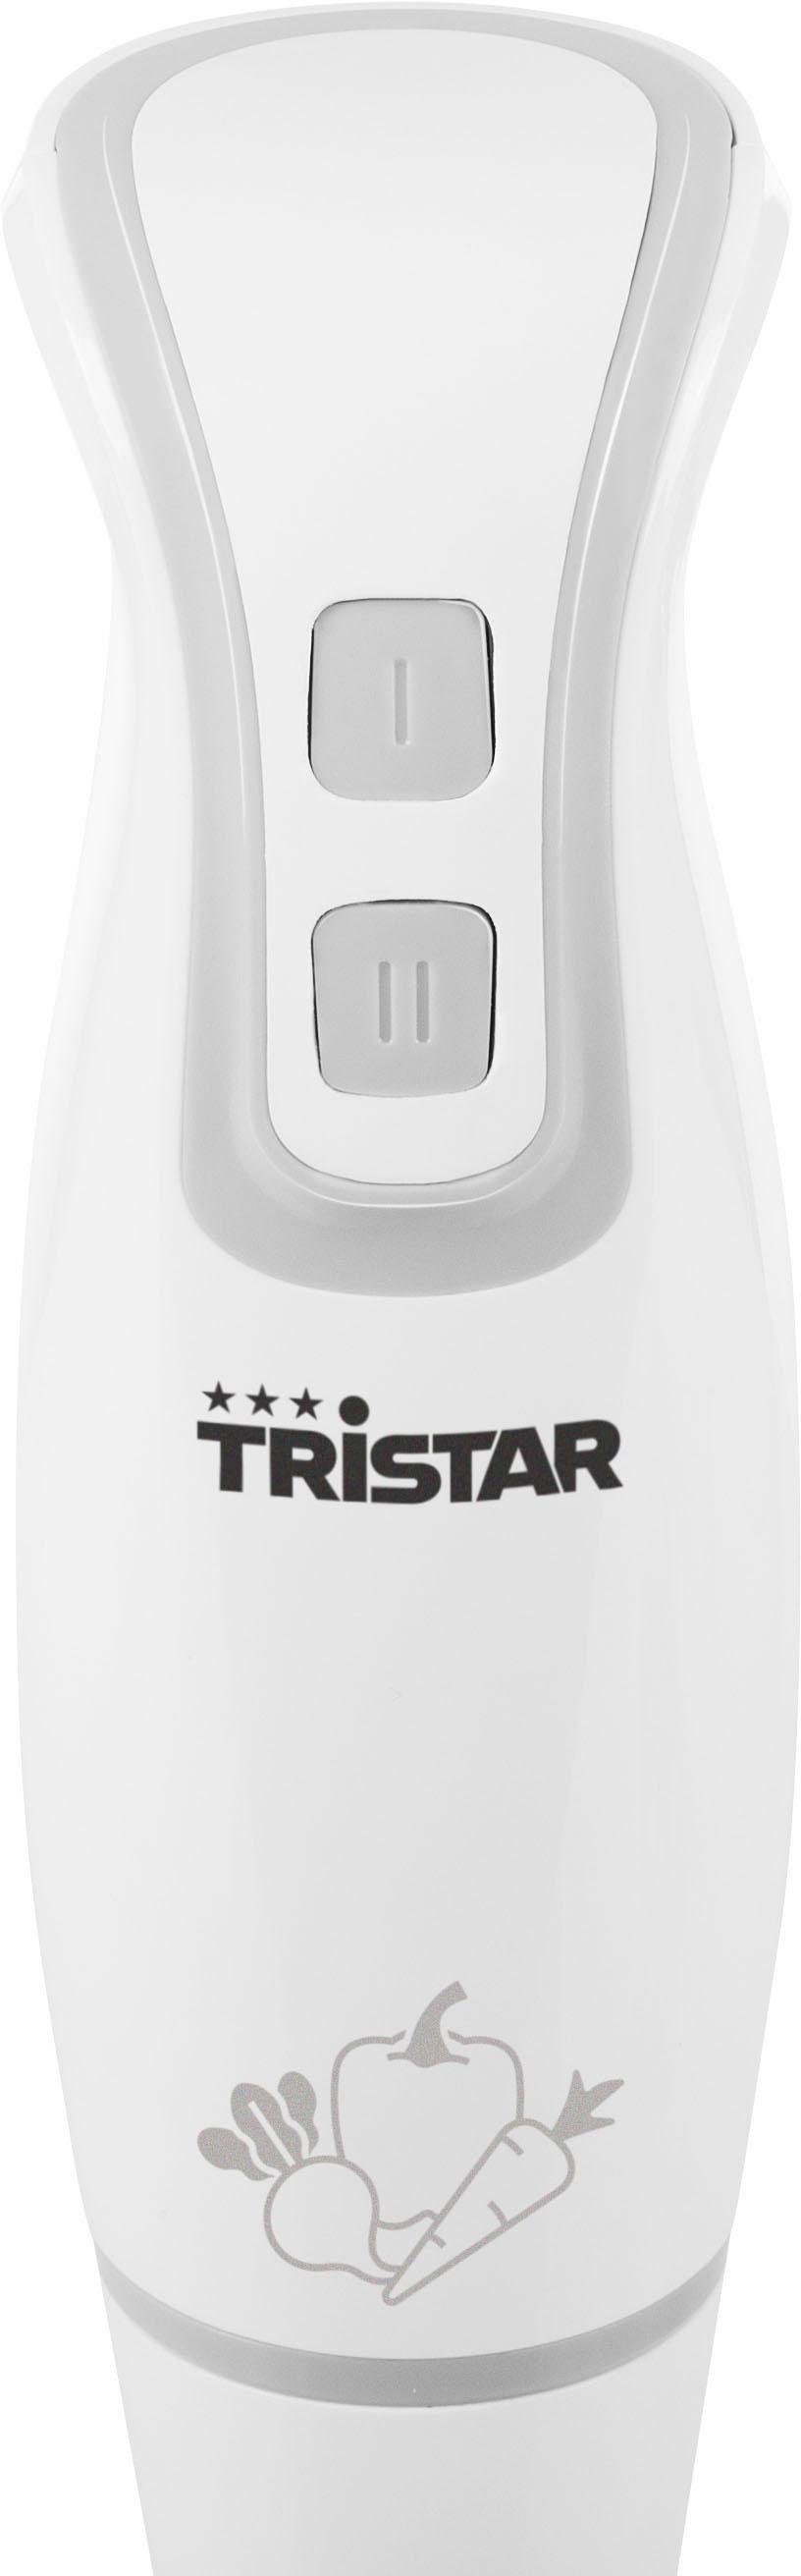 250 MX-4800, Tristar W Stabmixer